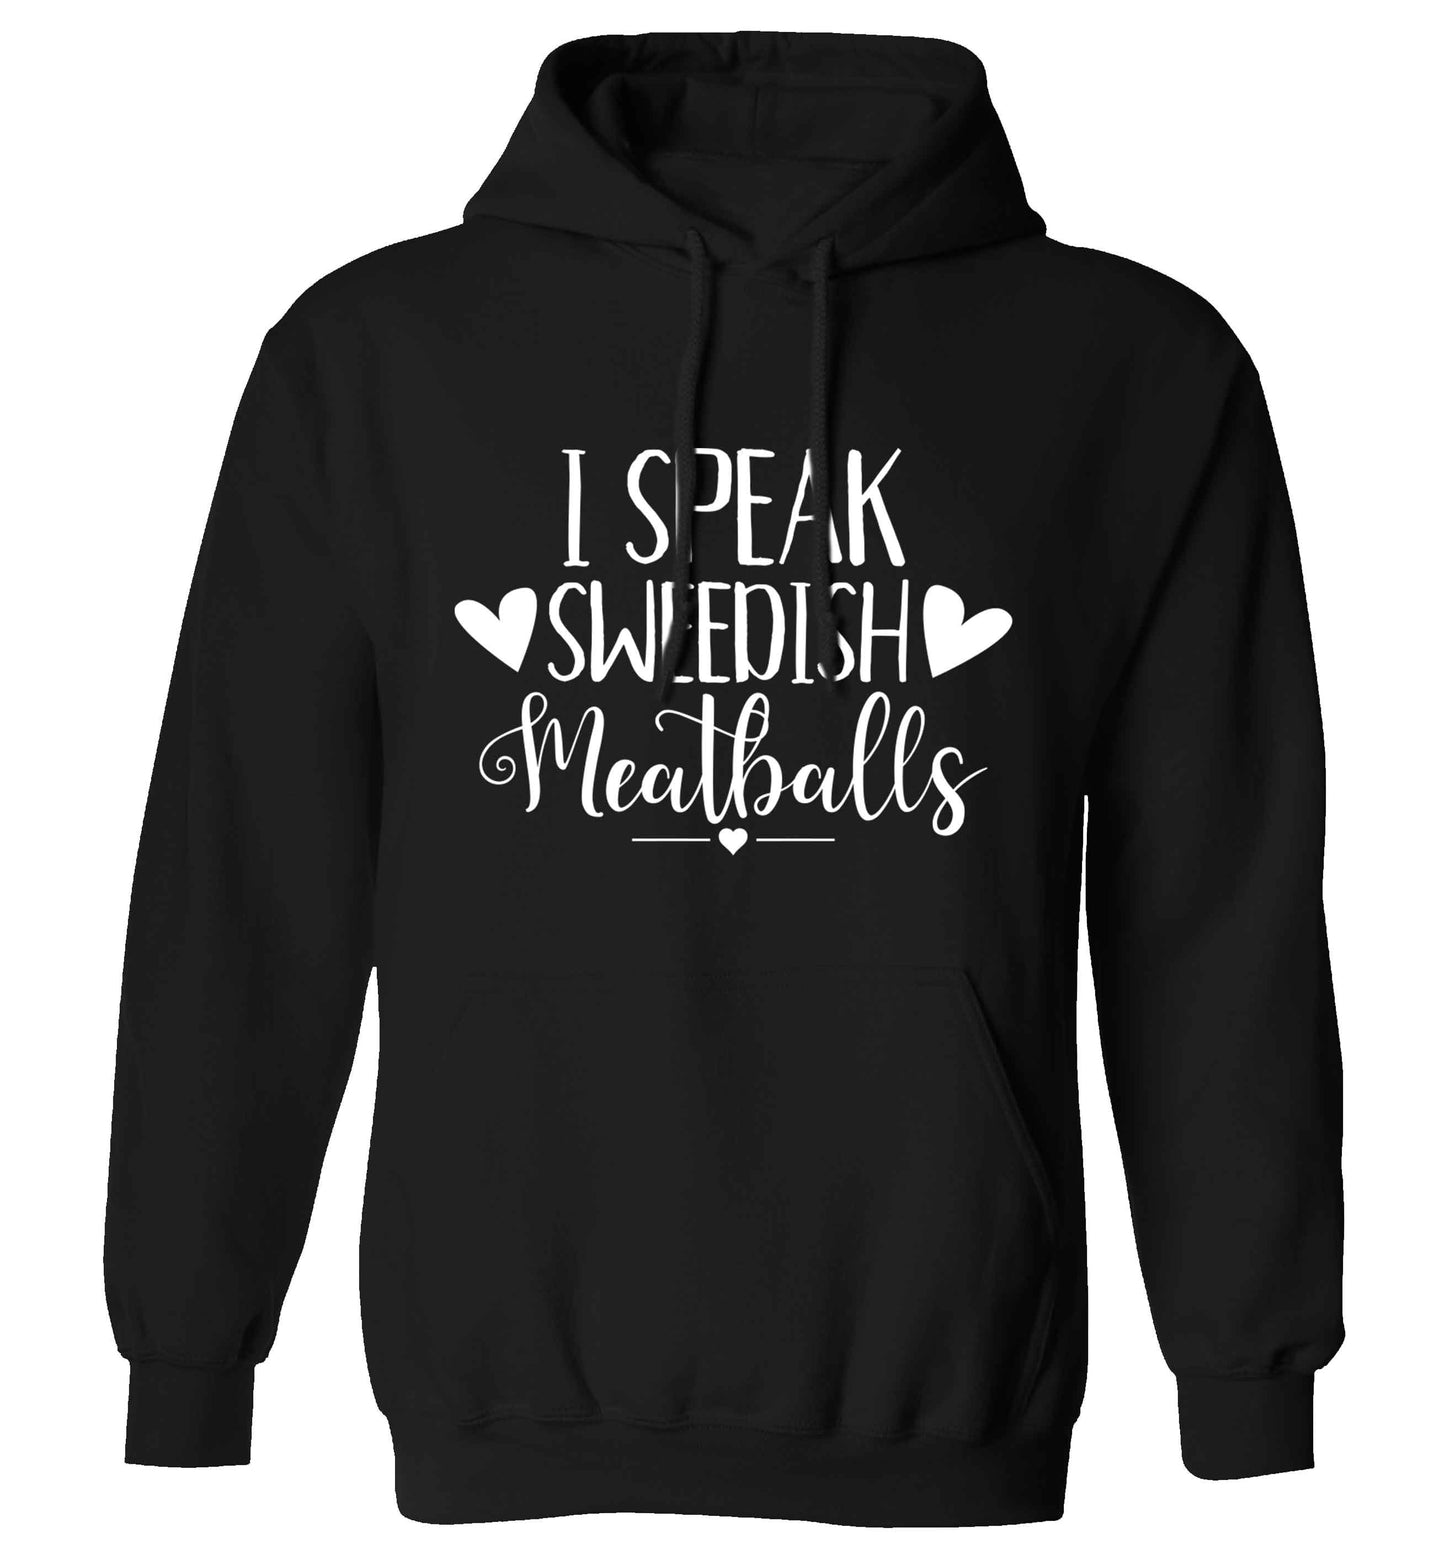 I speak sweedish...meatballs adults unisex black hoodie 2XL